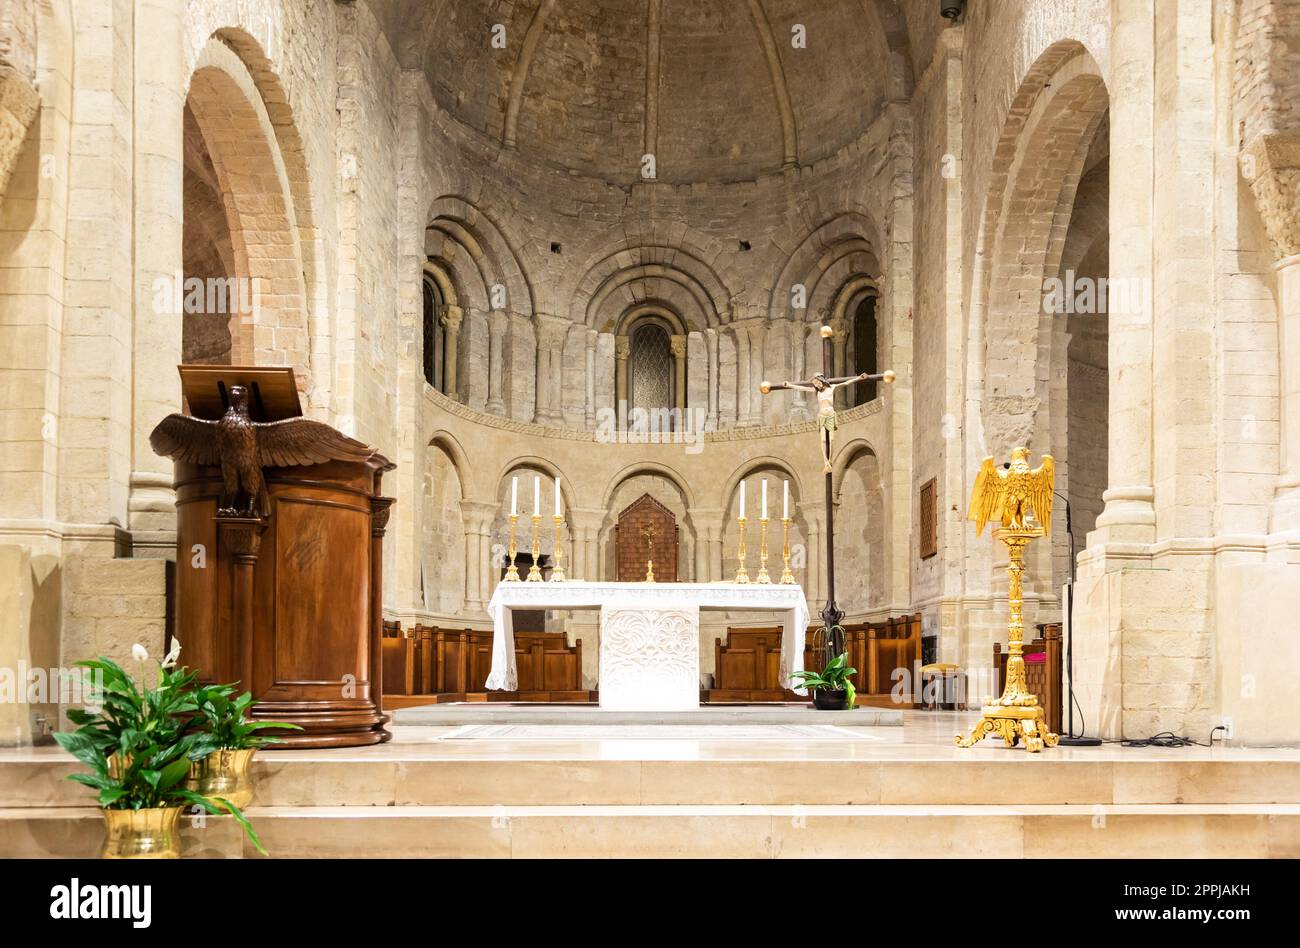 Ventimiglia - Italien - Innere der romanischen katholischen Kathedrale mit Altar Stockfoto